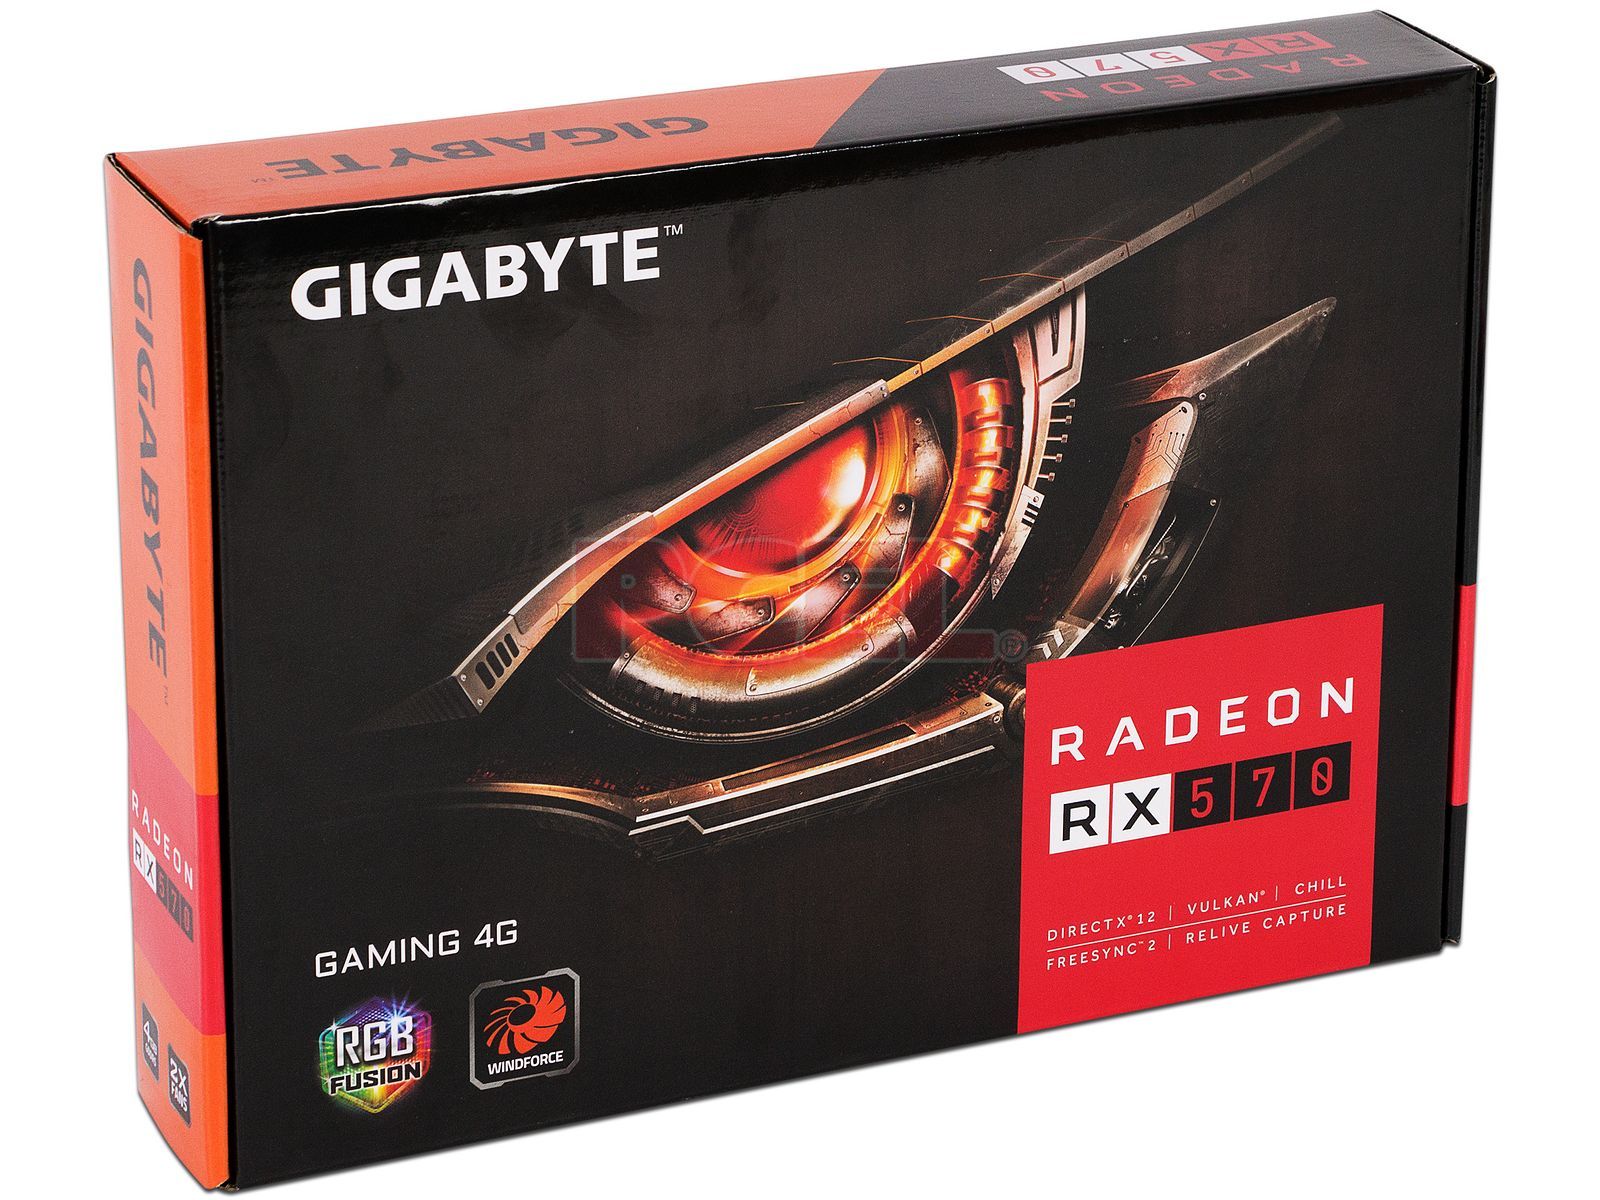 RX 570 Gigabyte. Gigabyte AMD Radeon RX 570. Gigabyte RX 570 4gb Gaming. Gigabyte 570 подсветка видеокарта. Gigabyte rx 570 gaming